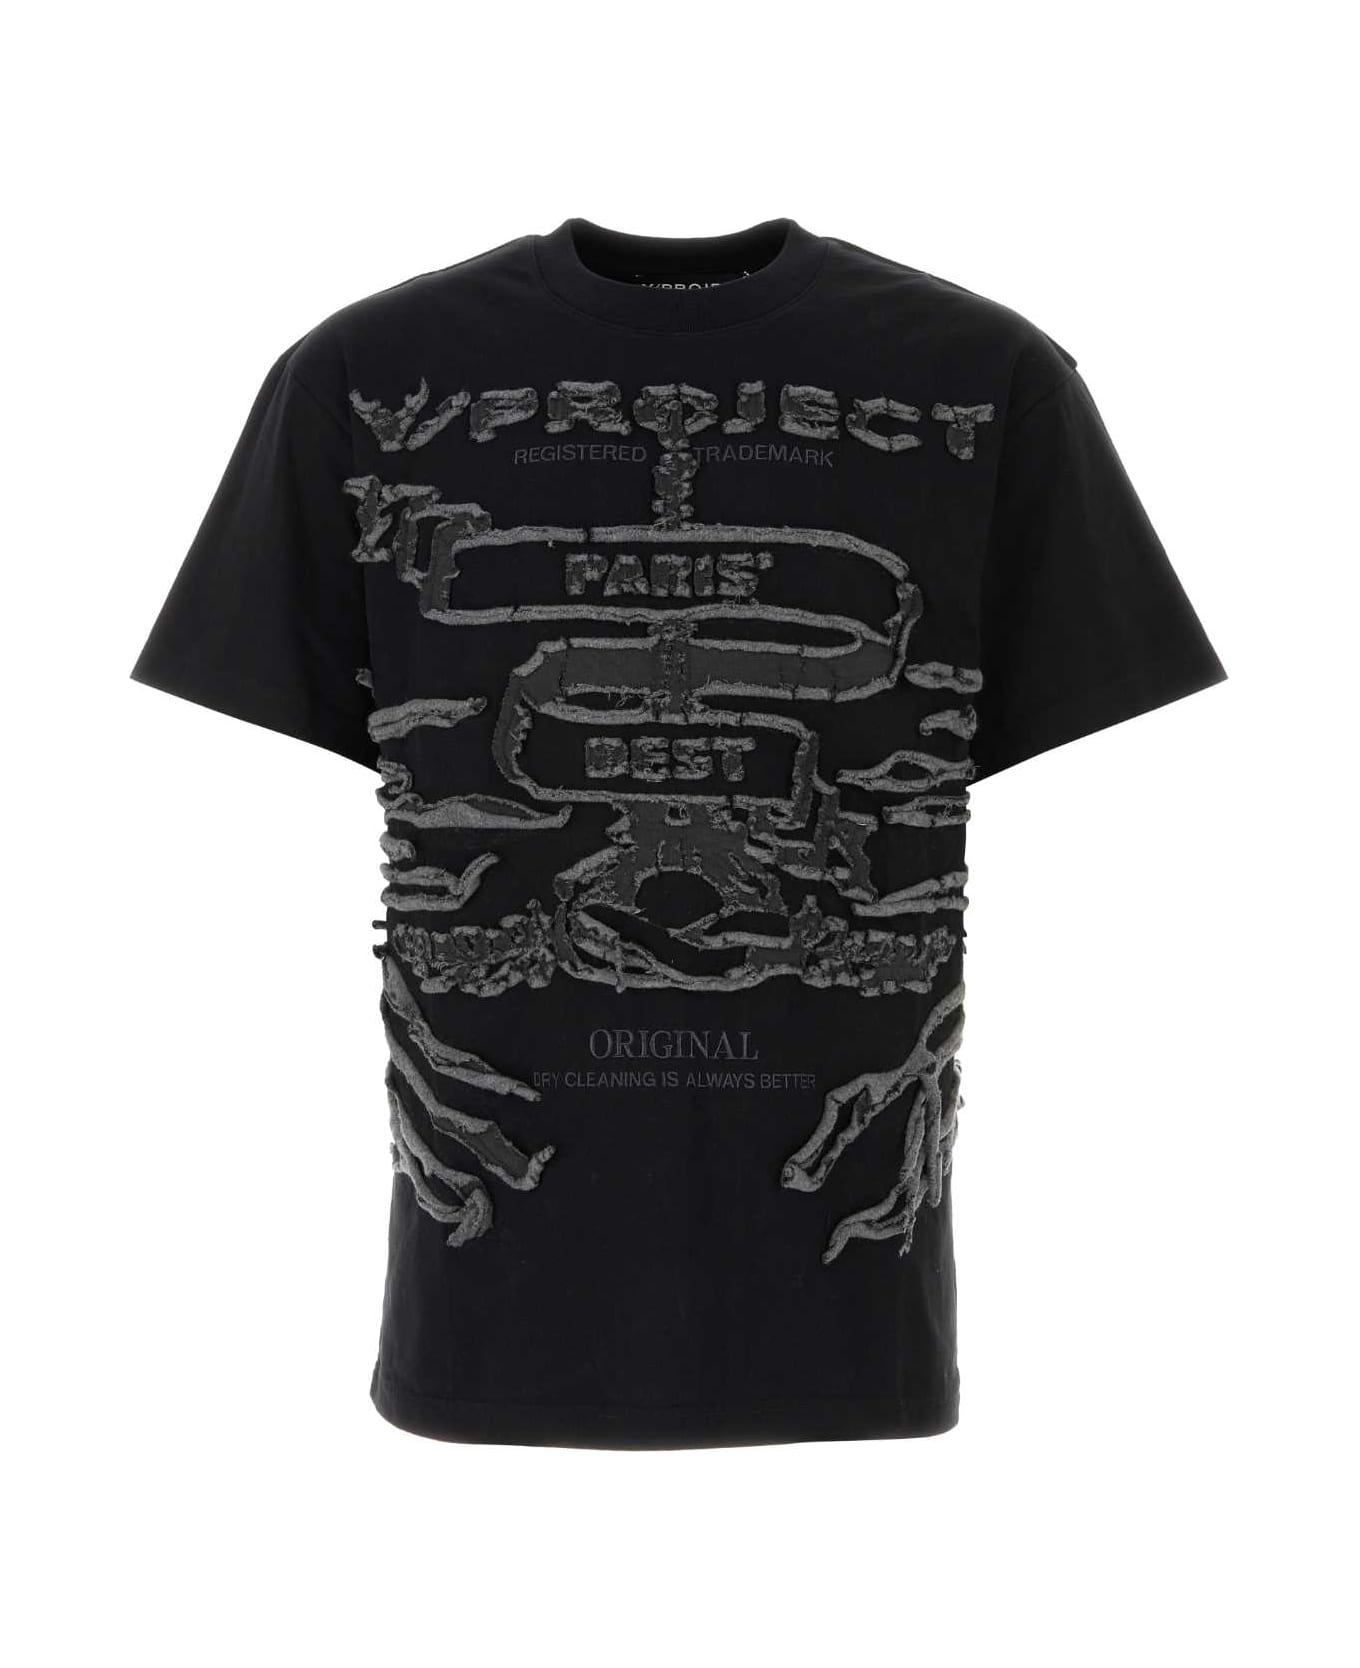 Y/Project Black Cotton T-shirt - Black